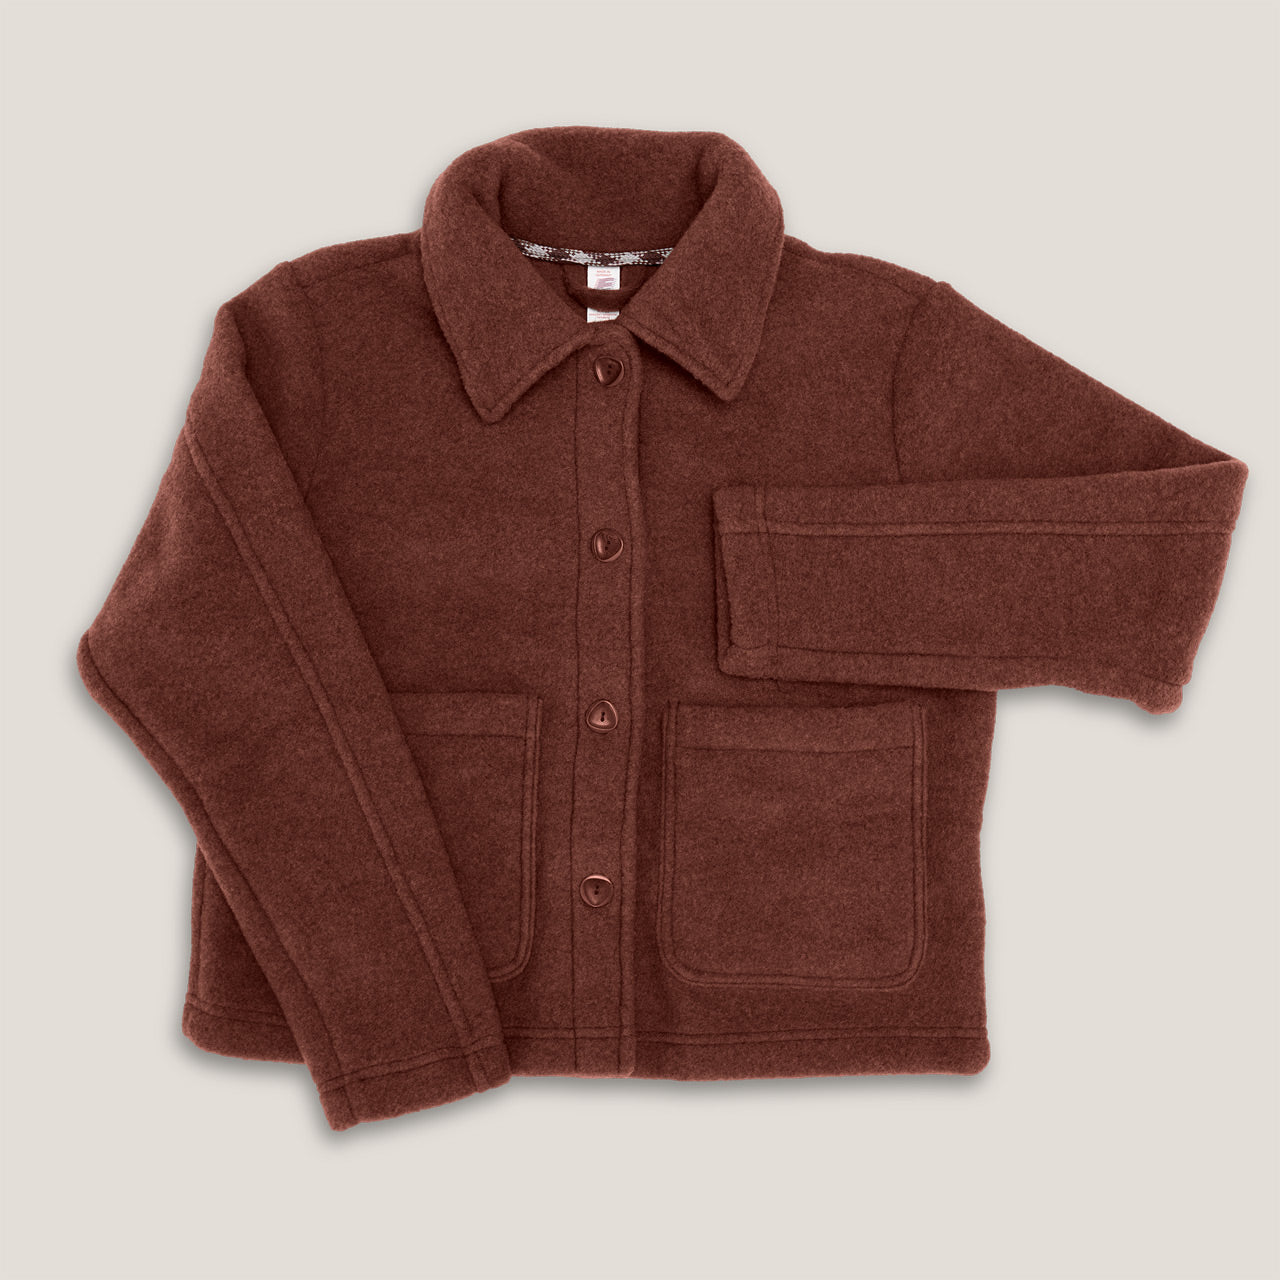 Women's Short Jacket - 100% Organic Wool Fleece - Cinnamon (XS-M) *Pre-order